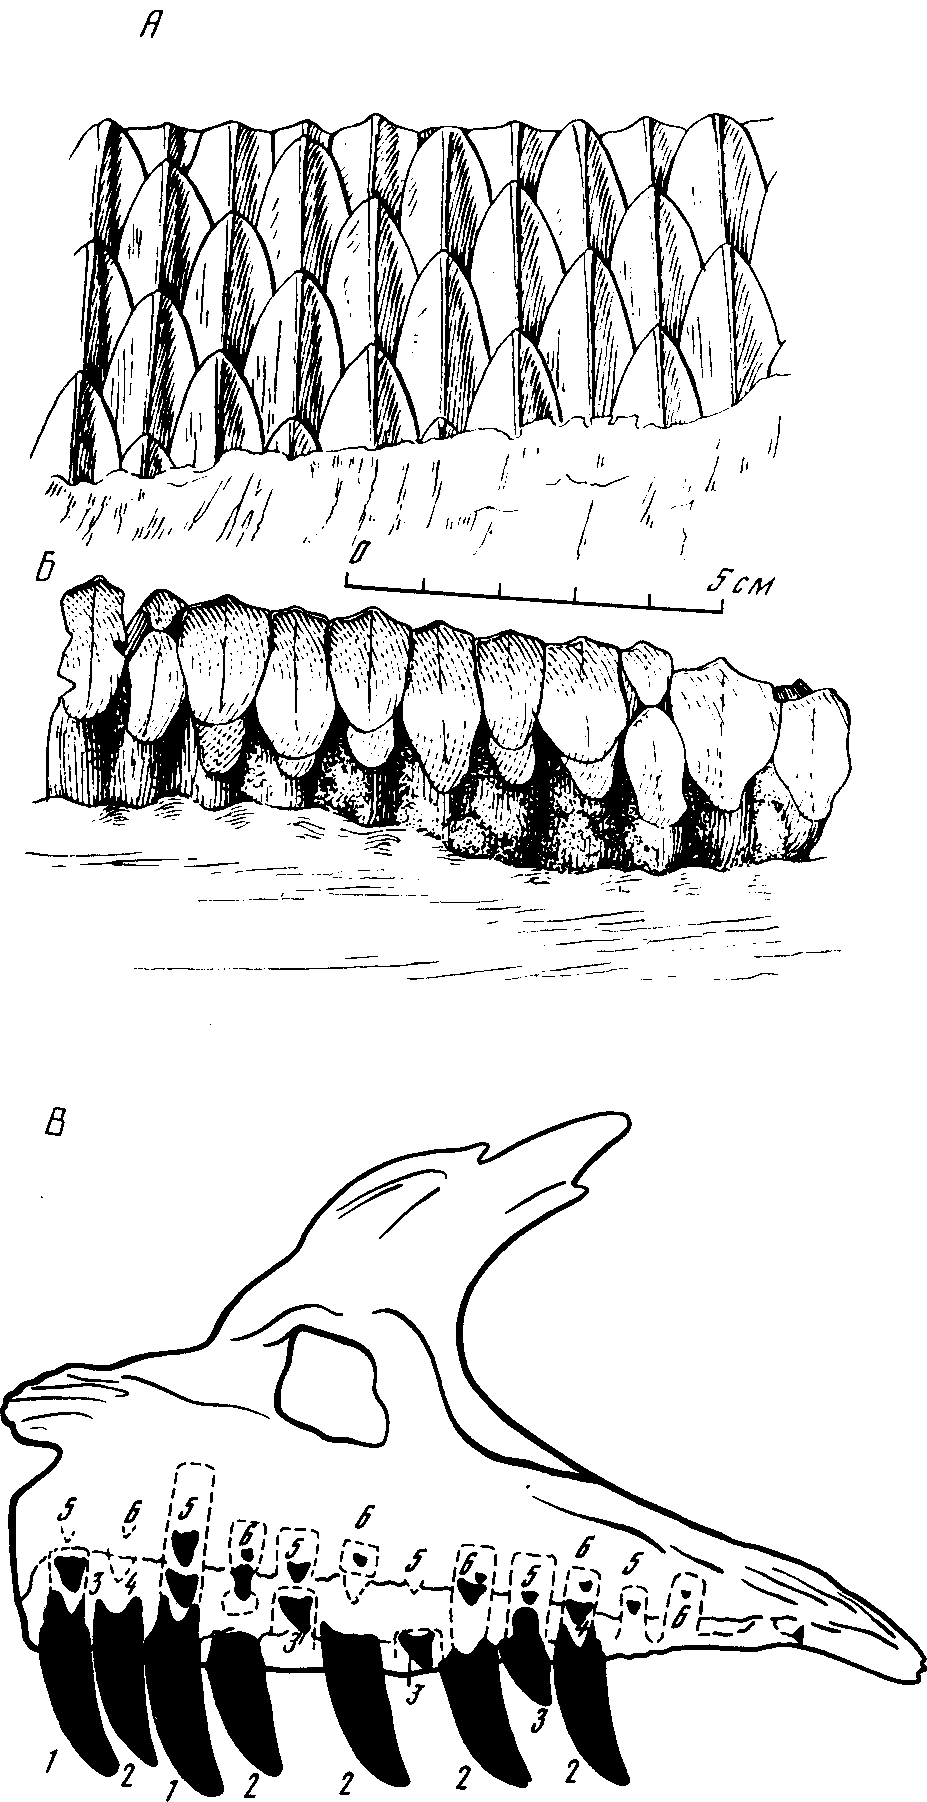 Рис. 36.Зубы динозавров. А — щечные зубы с язычной стороны зауролофа (Saurolophus angustirostris Rozhdestvensky); Б — жевательная поверхность, стертая косо наружу. Верхний мел. Нэмэгэту, Южная Гоби, Монголия; В — смена зубов у хищного динозавра антродемуса (Antrodemus). Нижний мел Северной Америки. Внутренняя сторона правой верхнечелюстной кости. Кинжаловидные зубы хищных динозавров слегка согнуты назад. Пунктиром схематично обозначены глубокие альвеолы для корней зубов и закладки замещающих зубов. Цифры указывают поколения, которым принадлежат зубы, и очередность смены; она начиналась с задних зубов и постепенно двигалась к переднему концу челюсти (Glenn Jepsen, 1964)